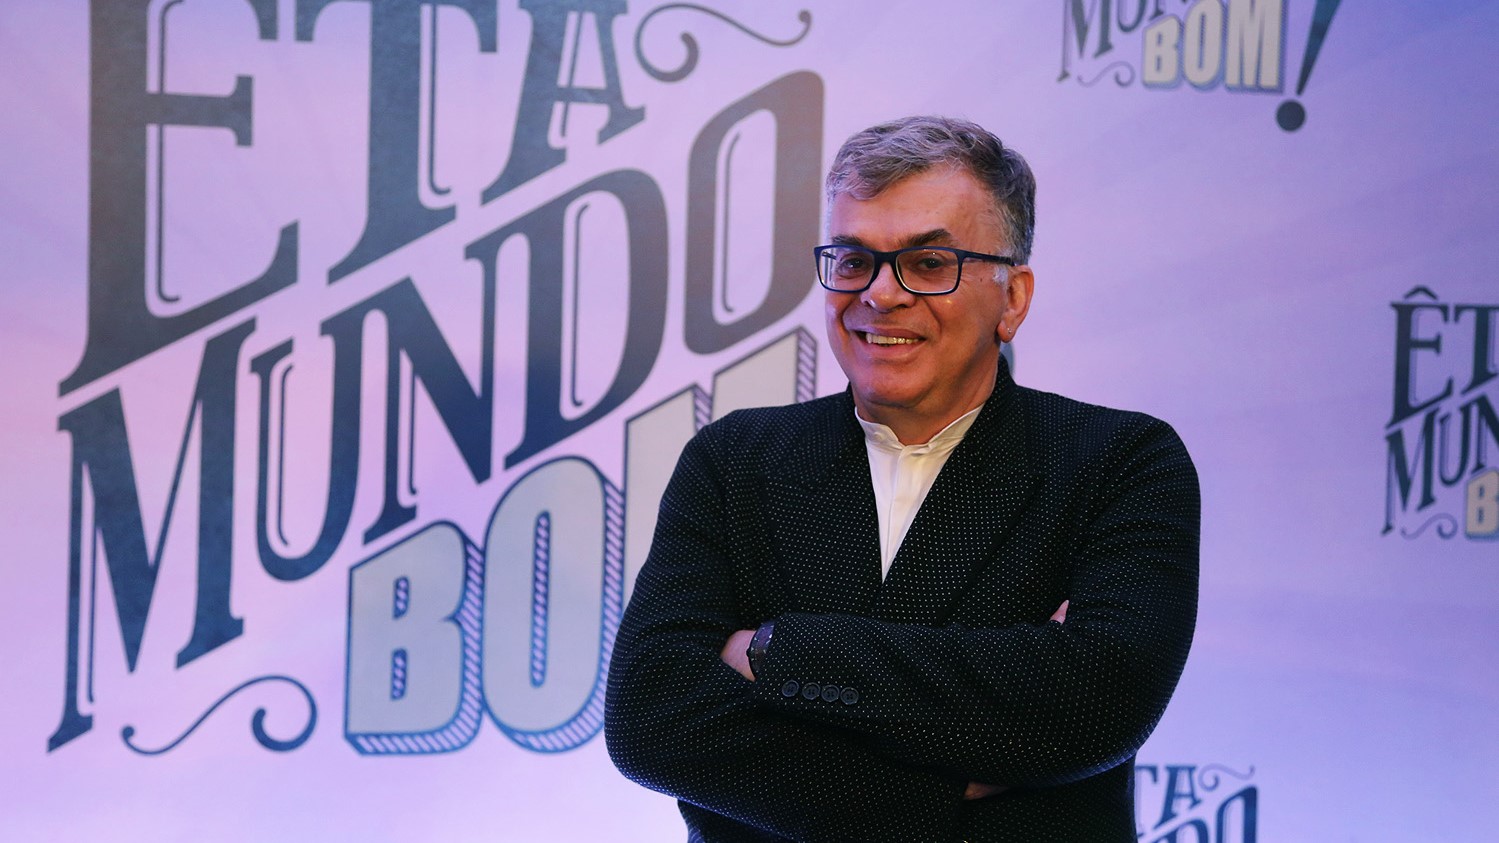 Walcyr Carrasco, autor de Êta Mundo Bom!